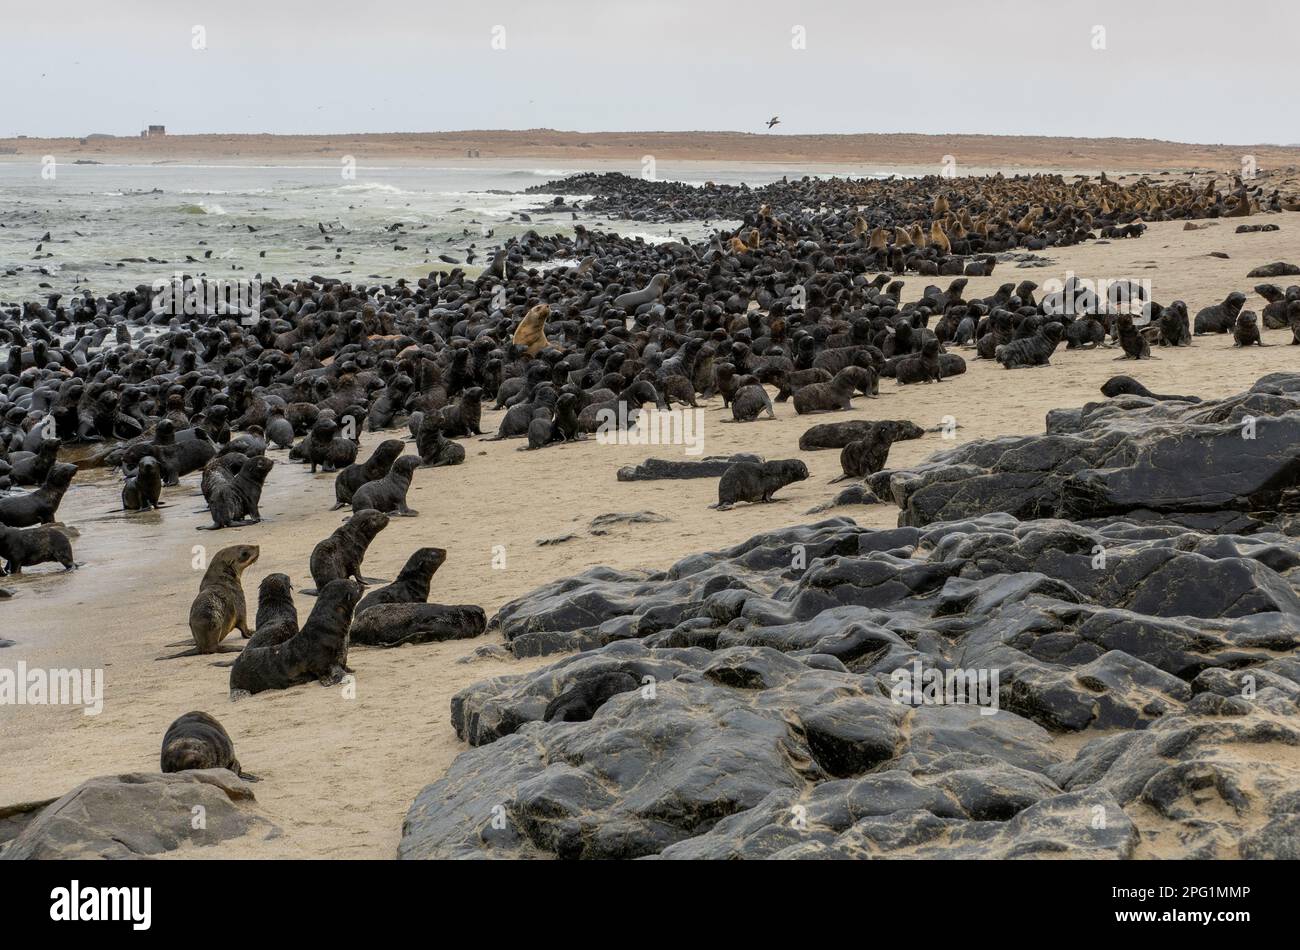 Phoques de la colonie/réserve de phoques du Cap Cross sur la côte de Sceleton, dans le nord de la Namibie 2023 Banque D'Images